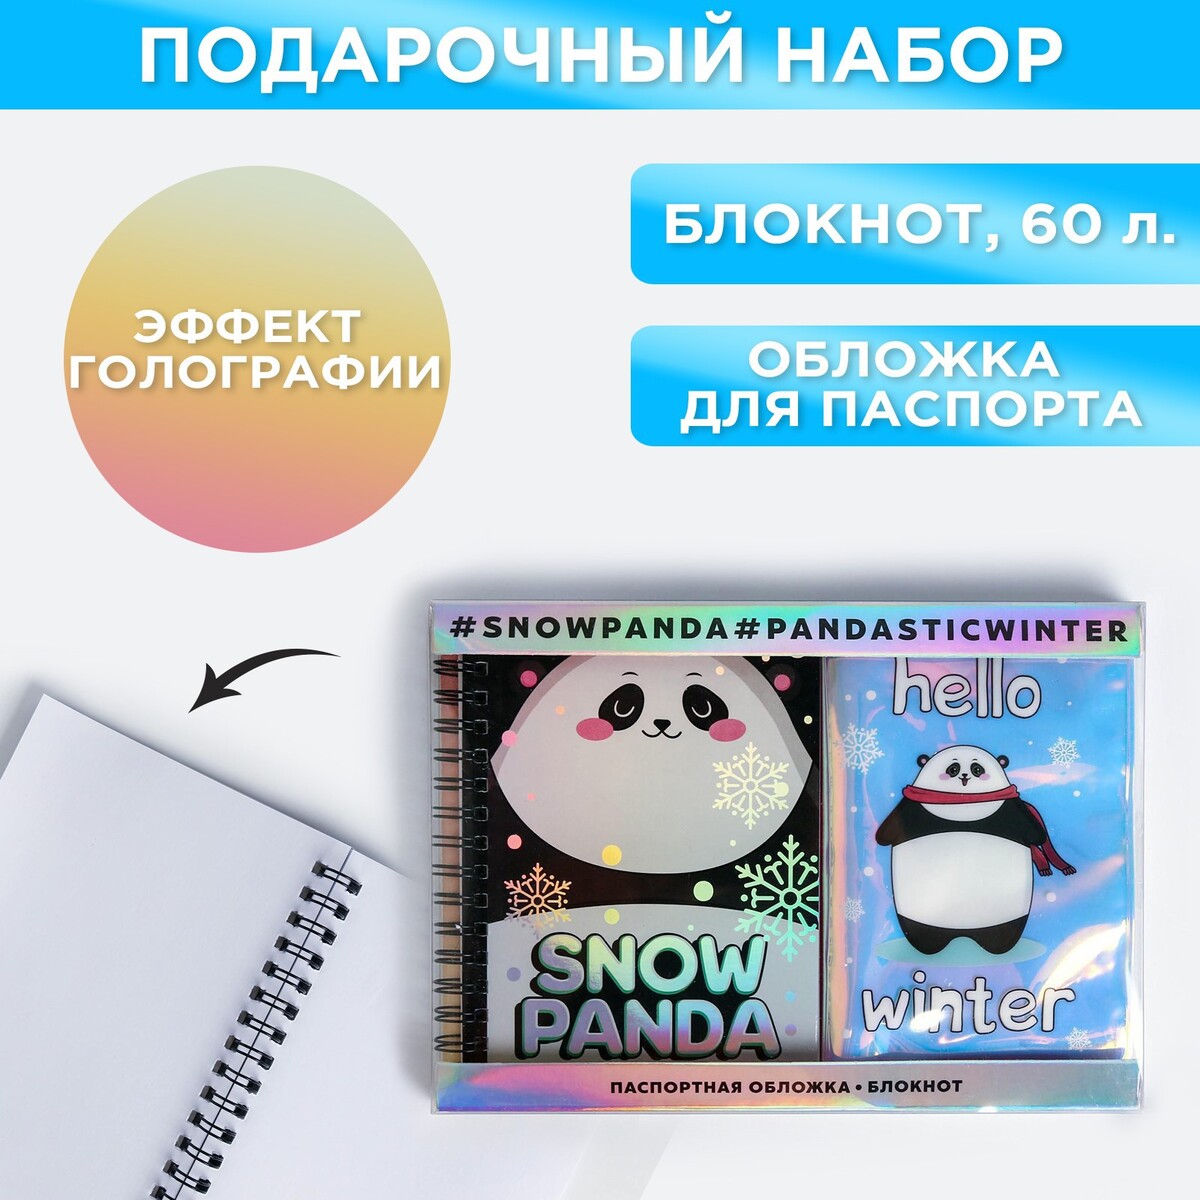  :     snow panda